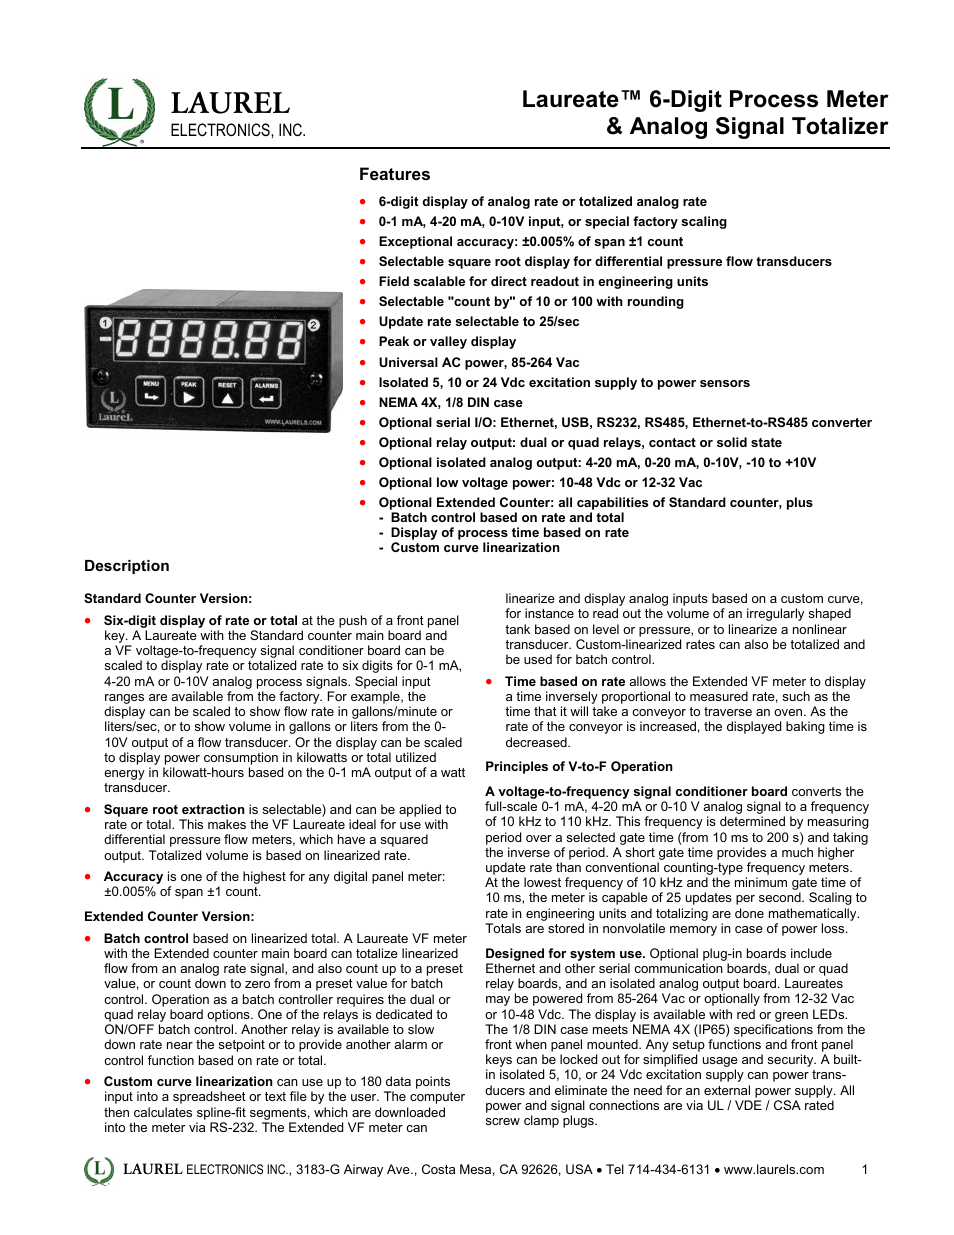 Laureate 6-Digit Process Meter & Analog Signal Totalizer